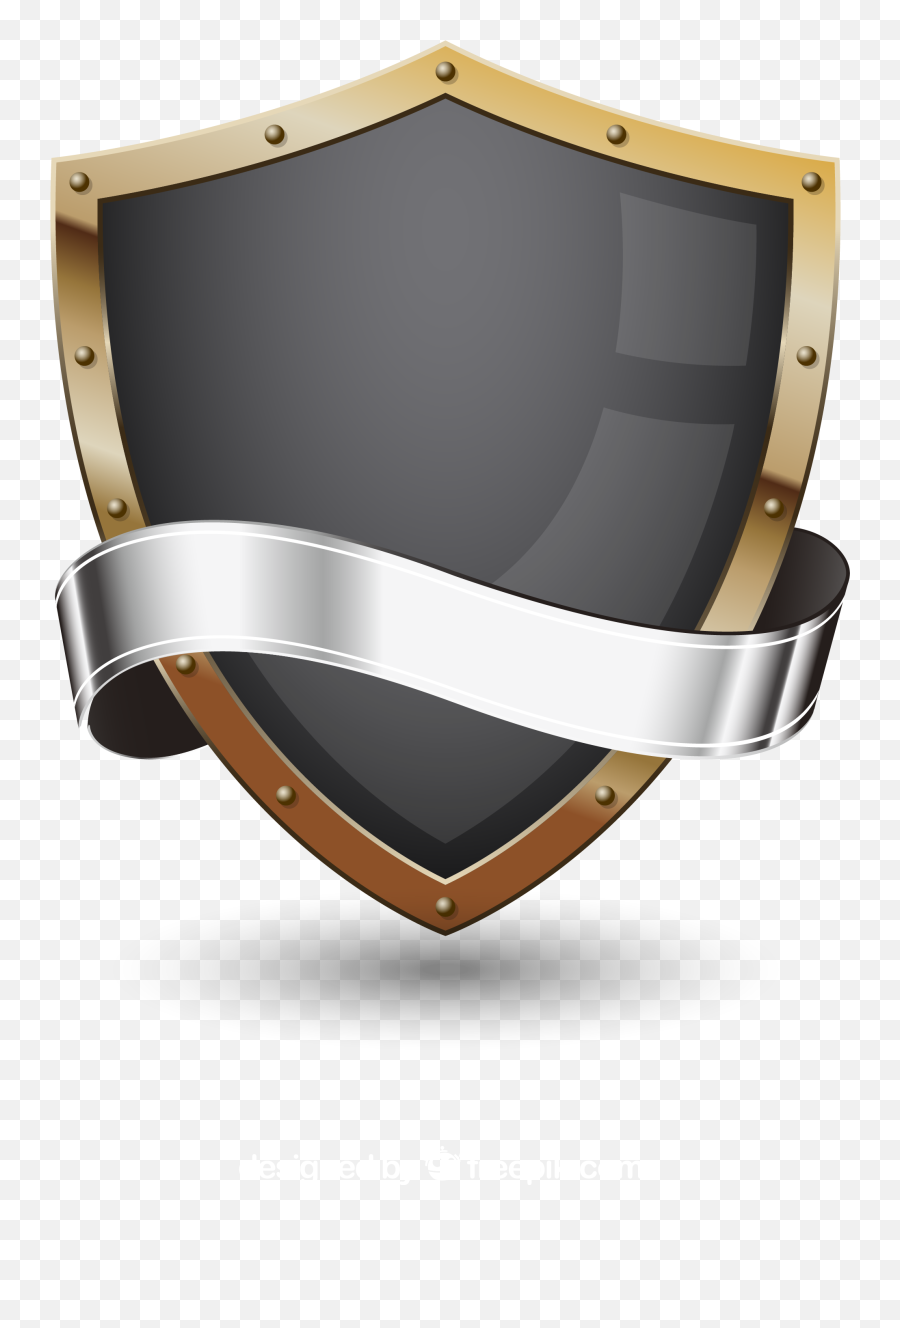 Shield Transparent Images - Shield Png Transparent Emoji,Shield Transparent Background